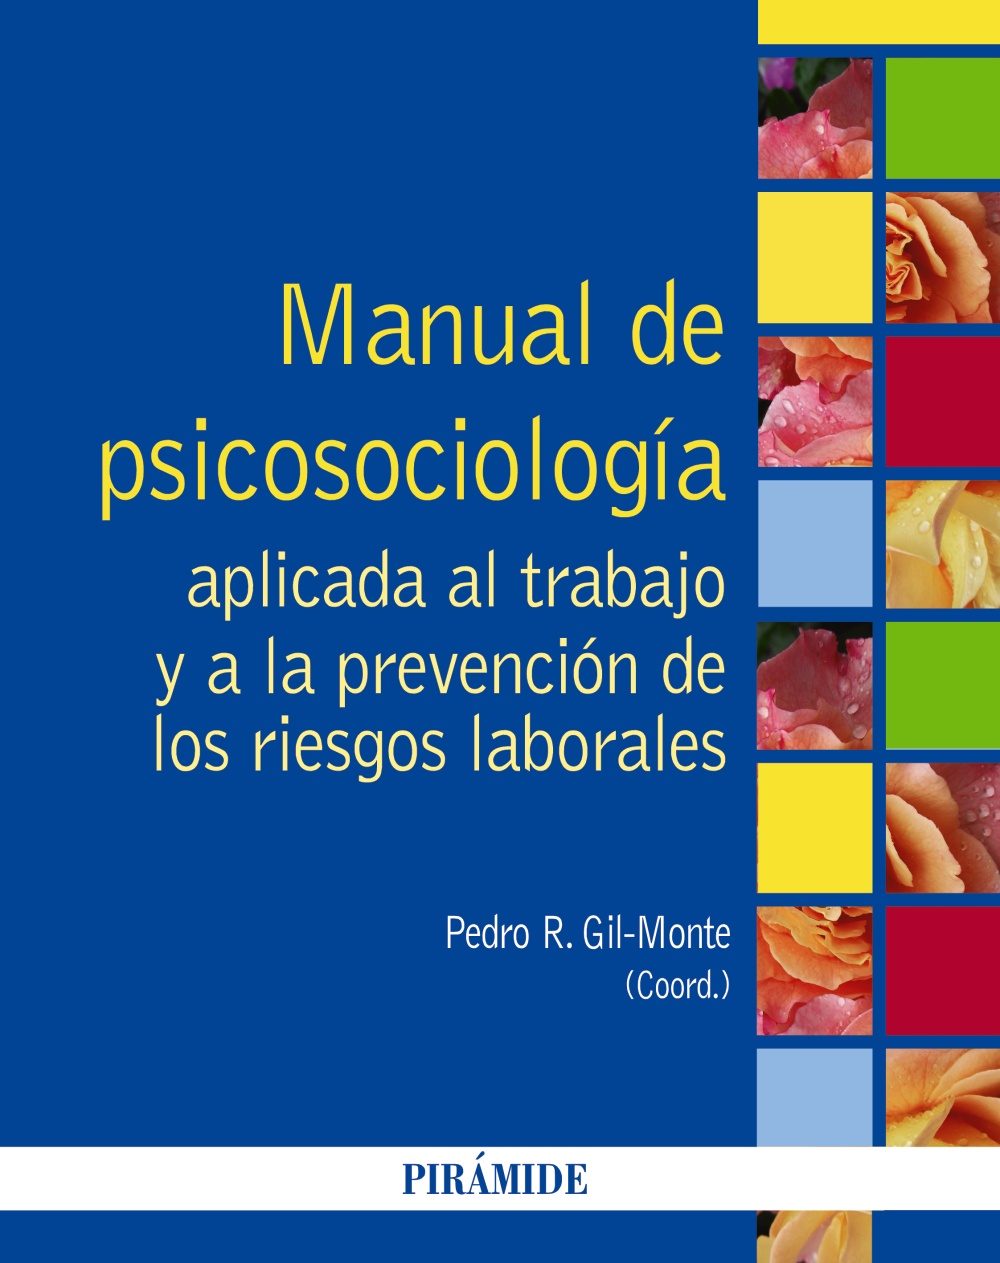 Imagen de portada del libro Manual de psicosociología aplicada al trabajo y a la prevención de los riesgos laborales